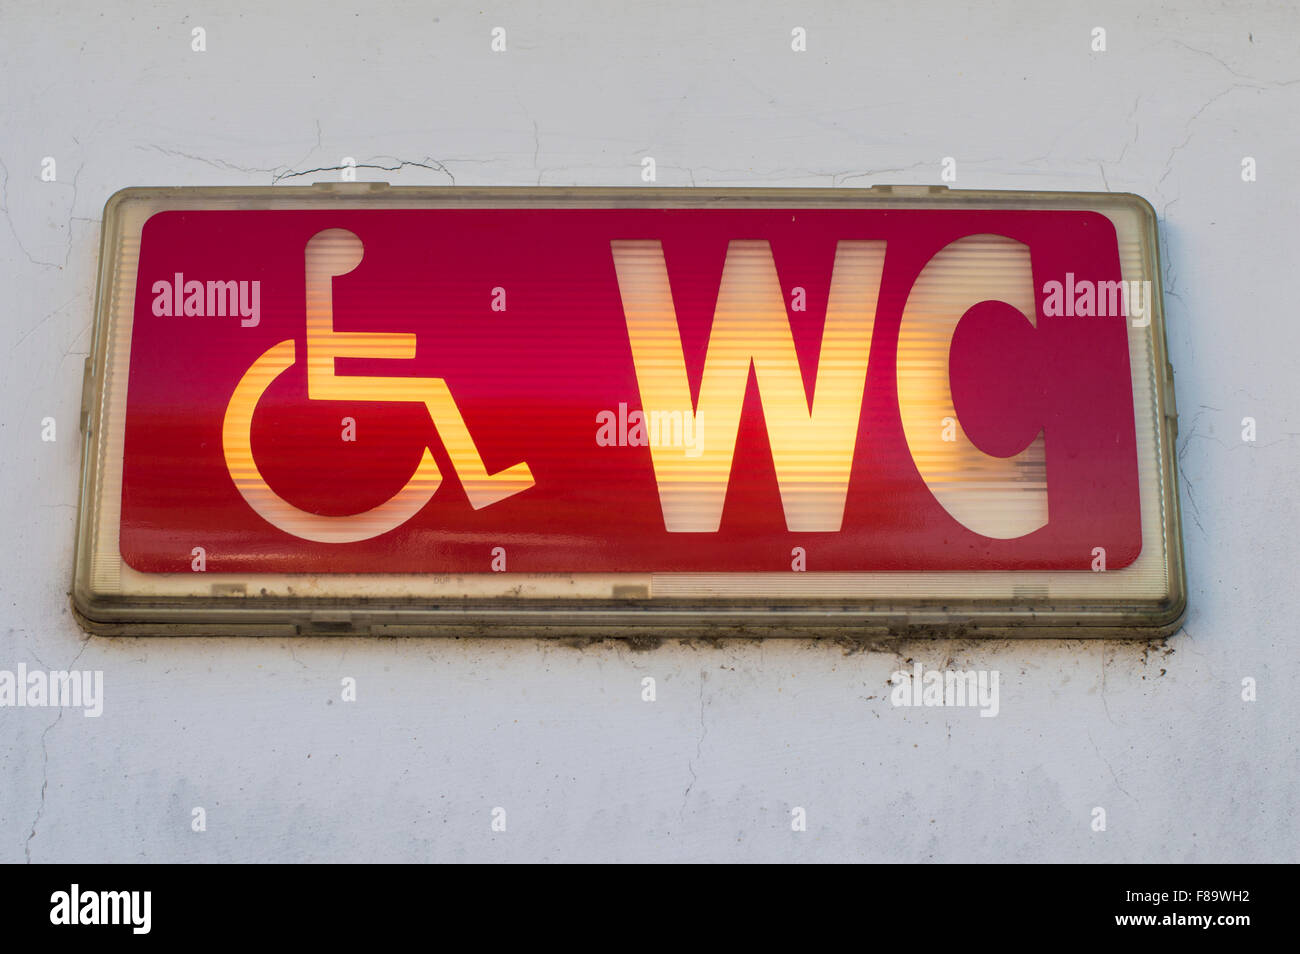 Handicap restroom illuminated sign Stock Photo